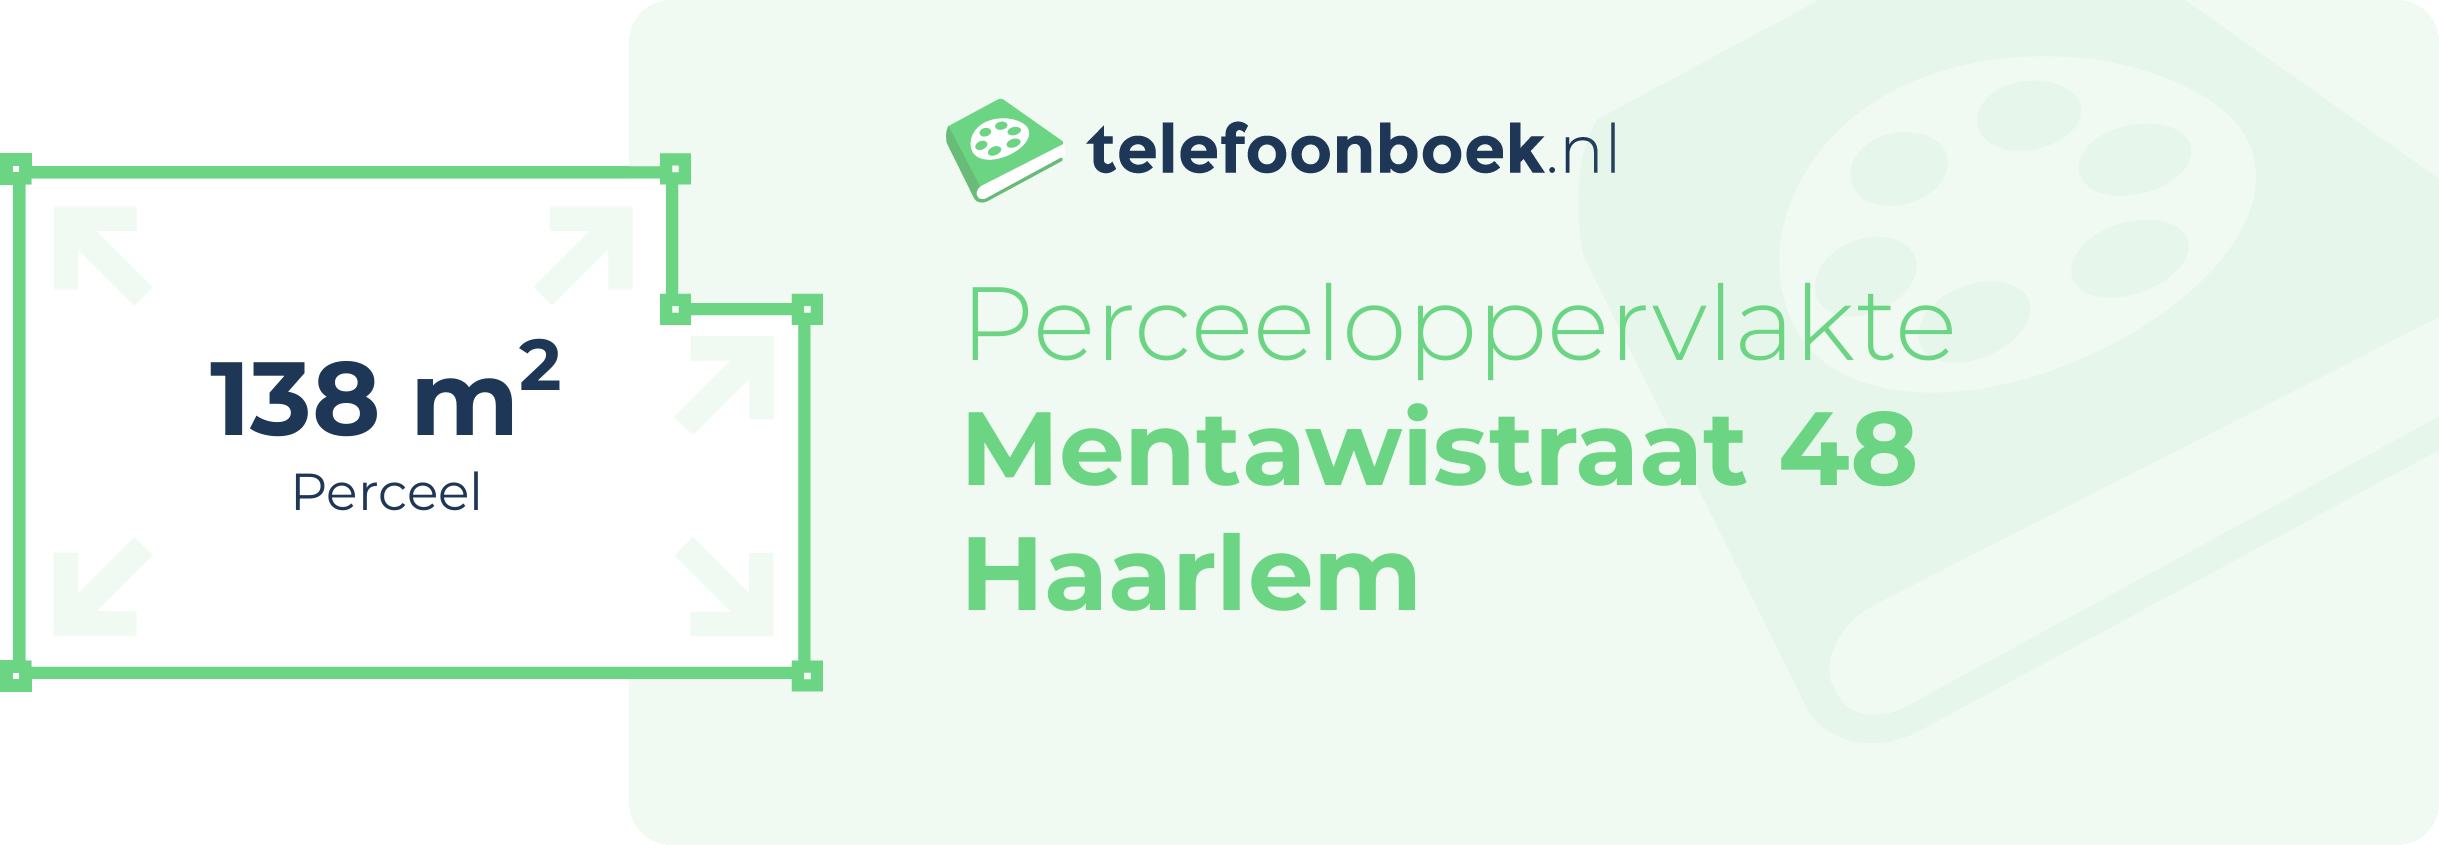 Perceeloppervlakte Mentawistraat 48 Haarlem